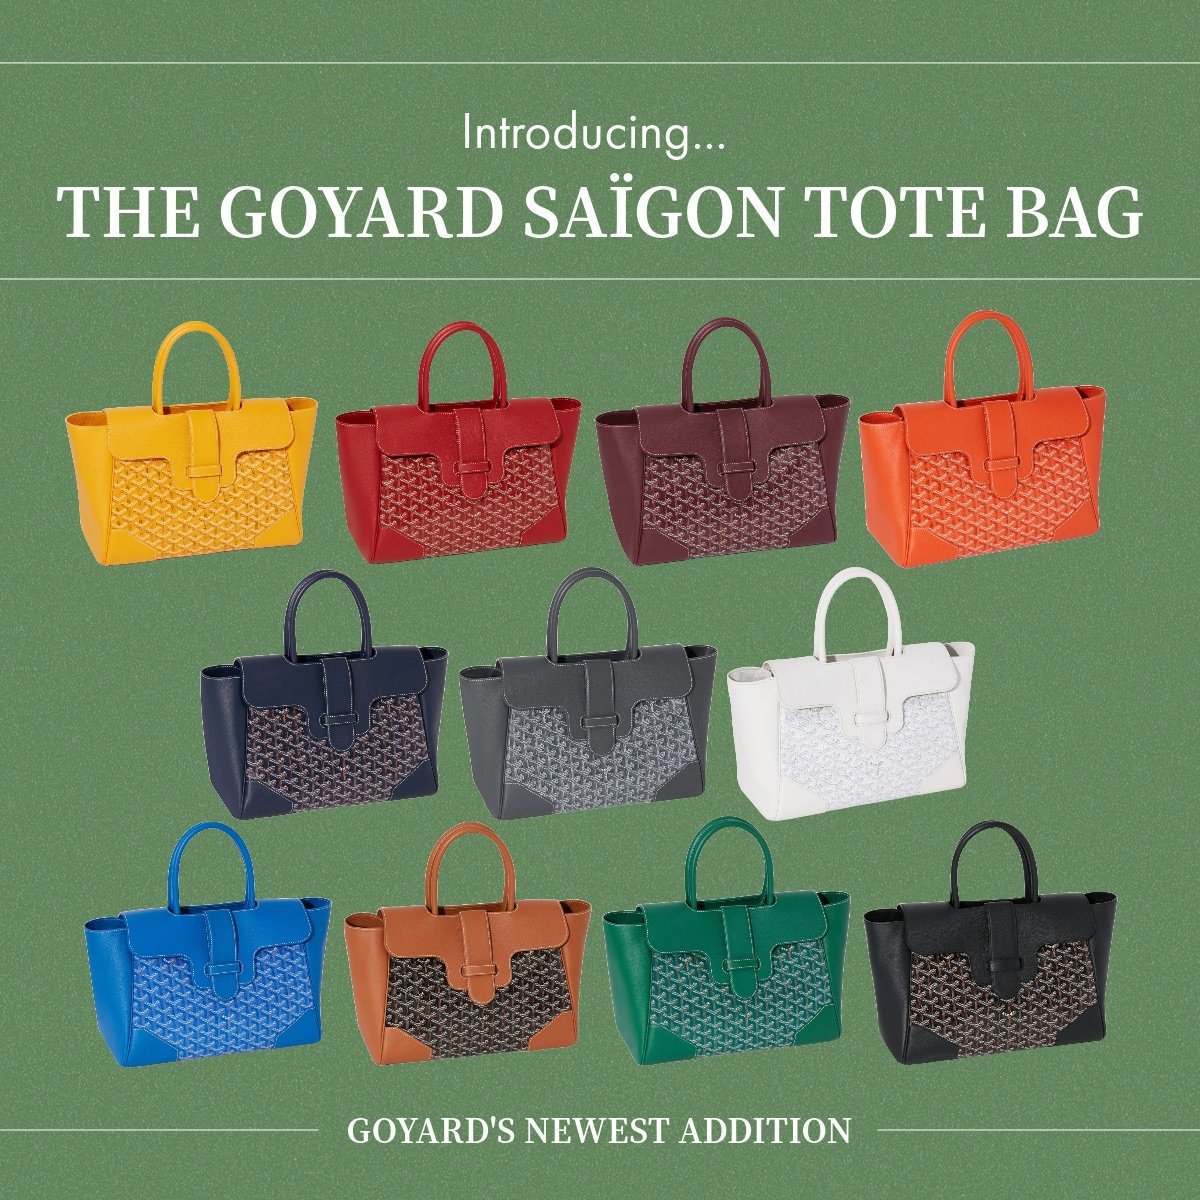 10 Goyard Bags & Luggage ideas  goyard bag, goyard, goyard handbags